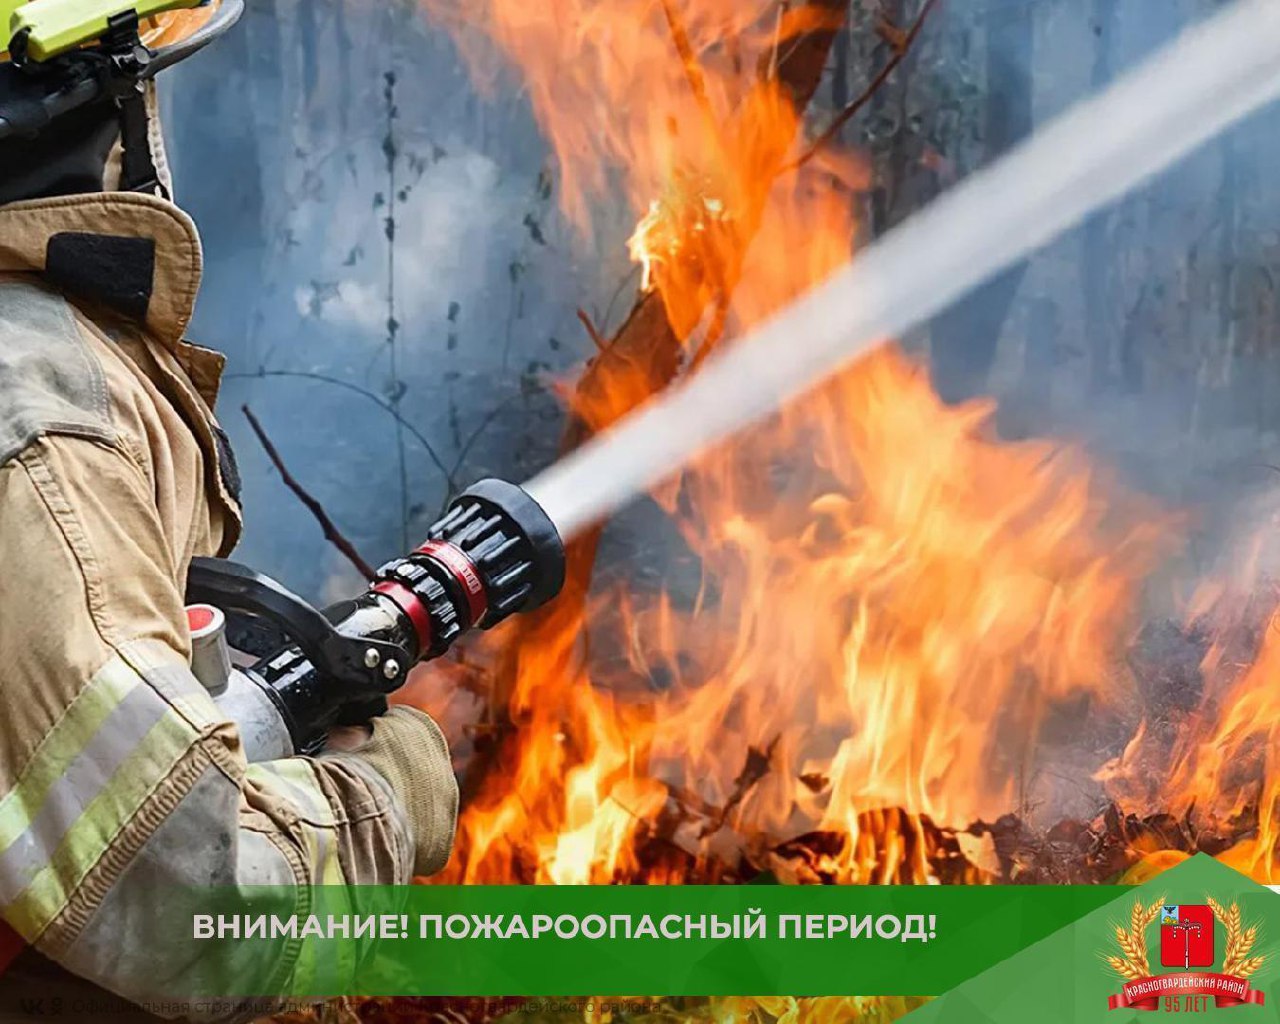 Ежегодно в летний период пожарные подразделения Белгородской области ликвидируют последствия возгораний сухой травы и мусора.